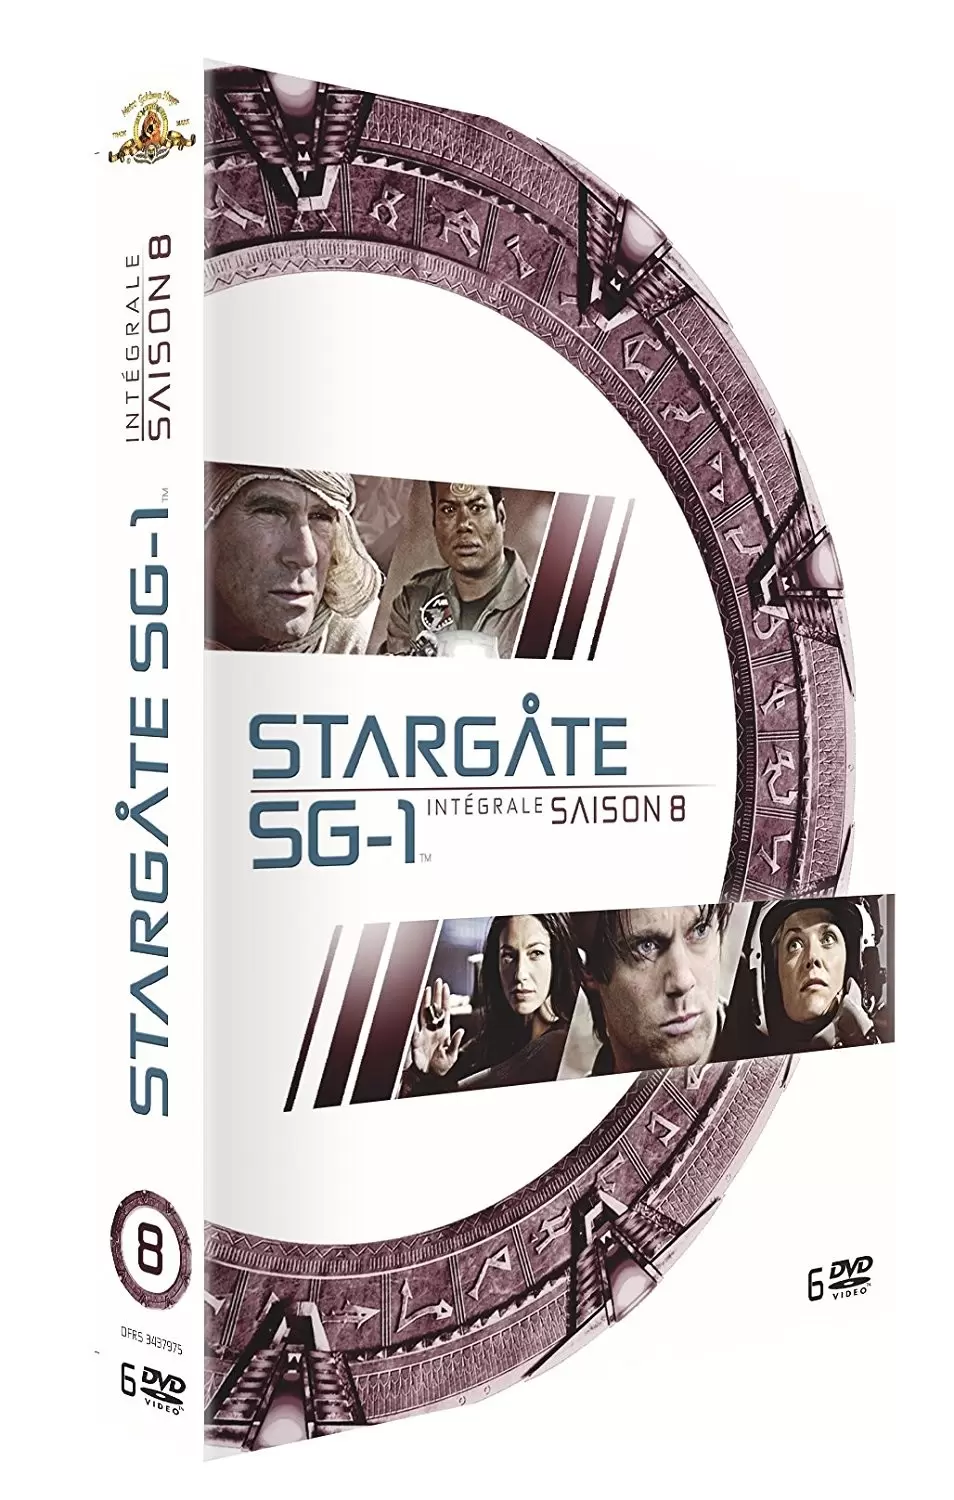 Stargate SG-1 - Stargate SG-1 - Saison 8